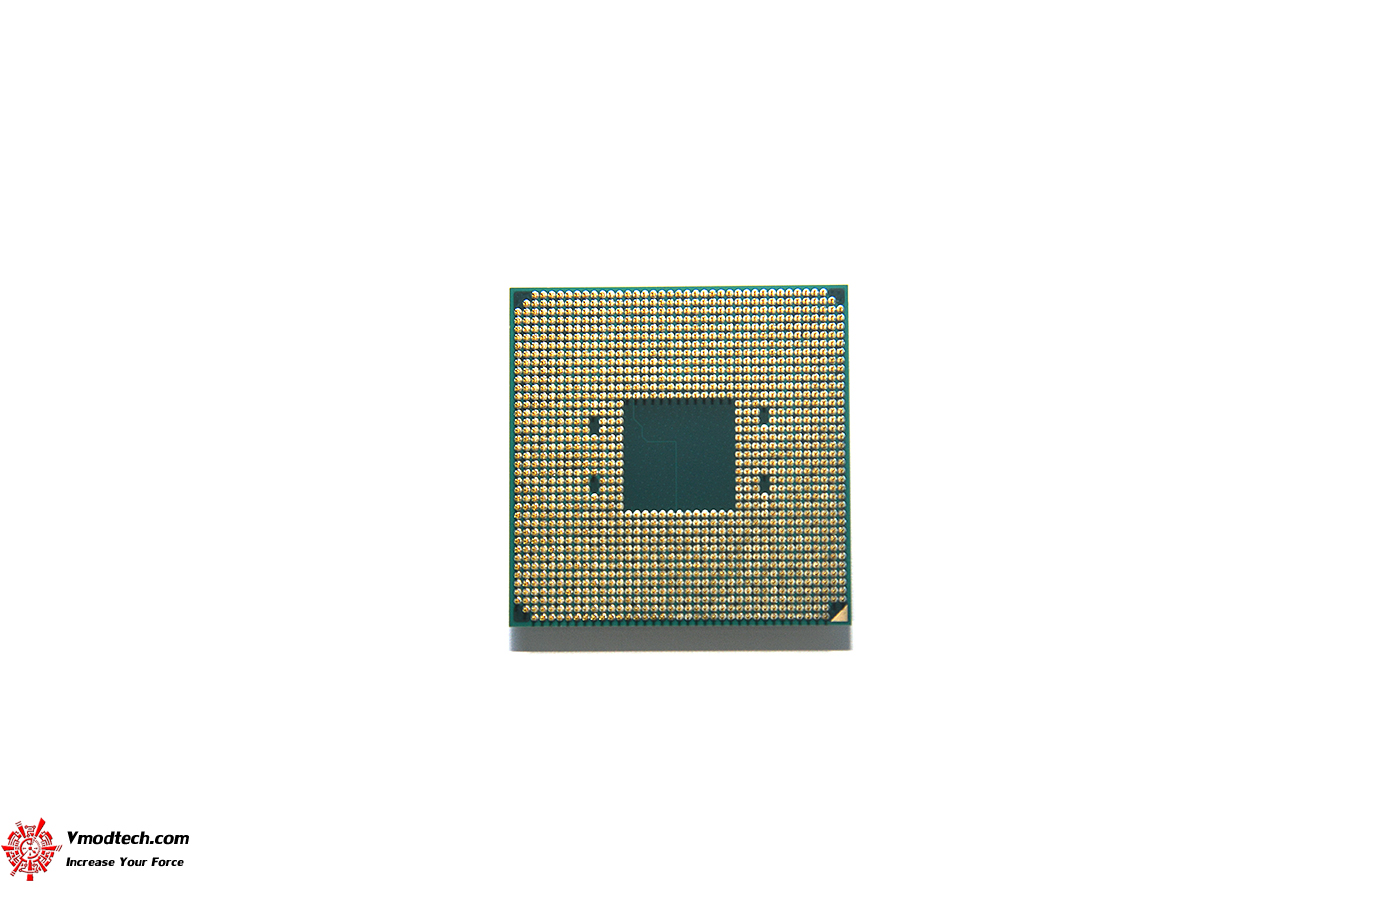 dsc 3643 AMD RYZEN 7 PRO 4750G PROCESSOR REVIEW